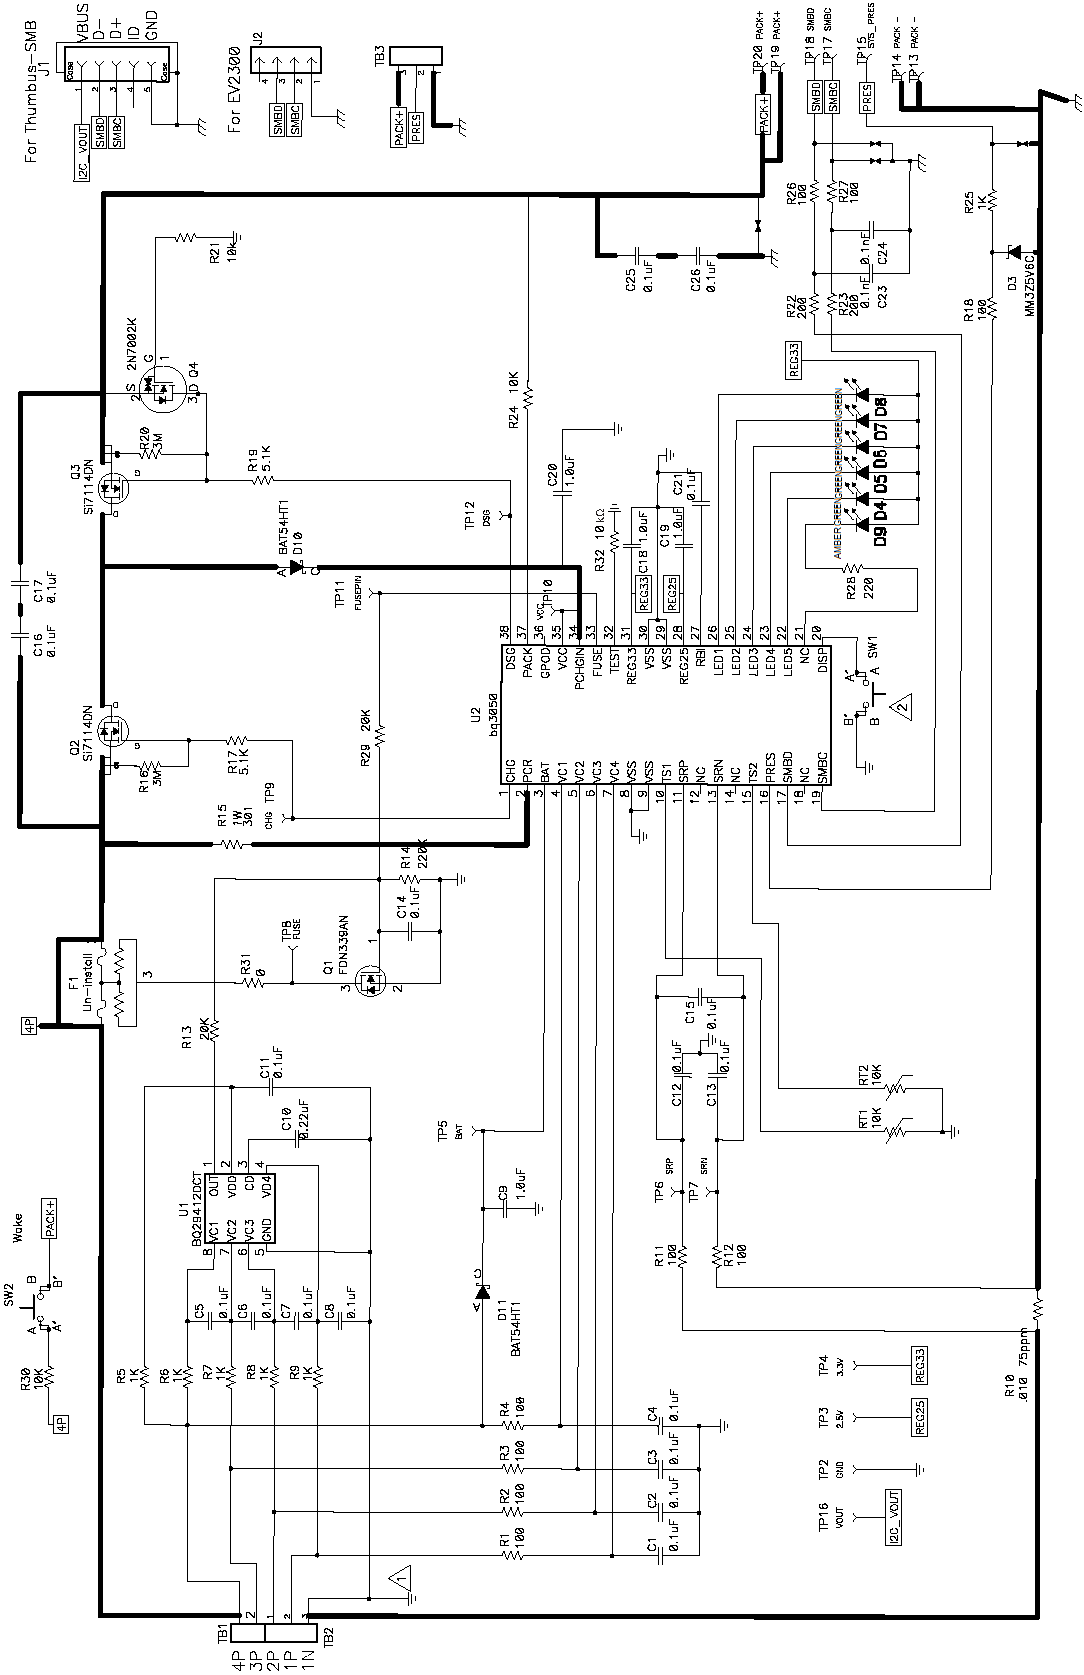 bq3050 schematic_3050.png